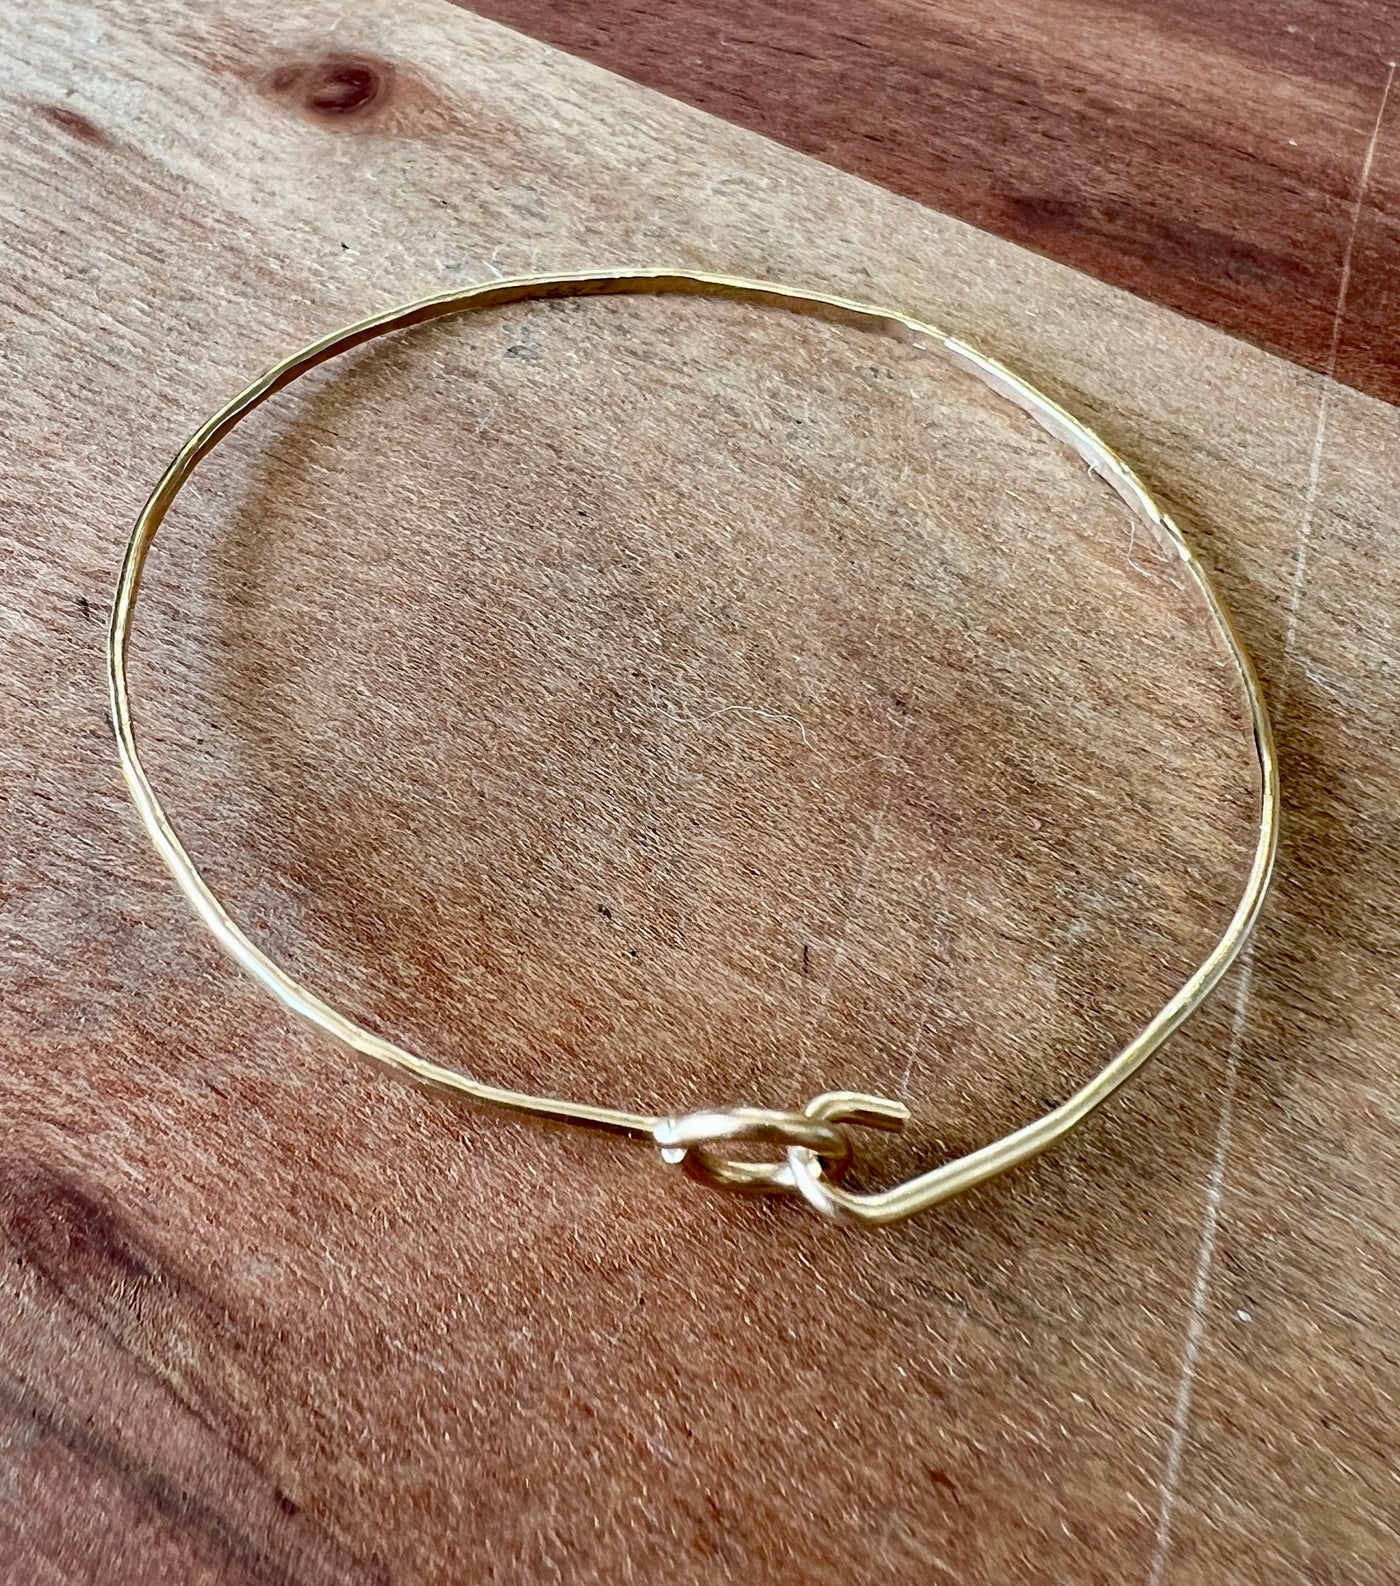 cecelia gold bracelet